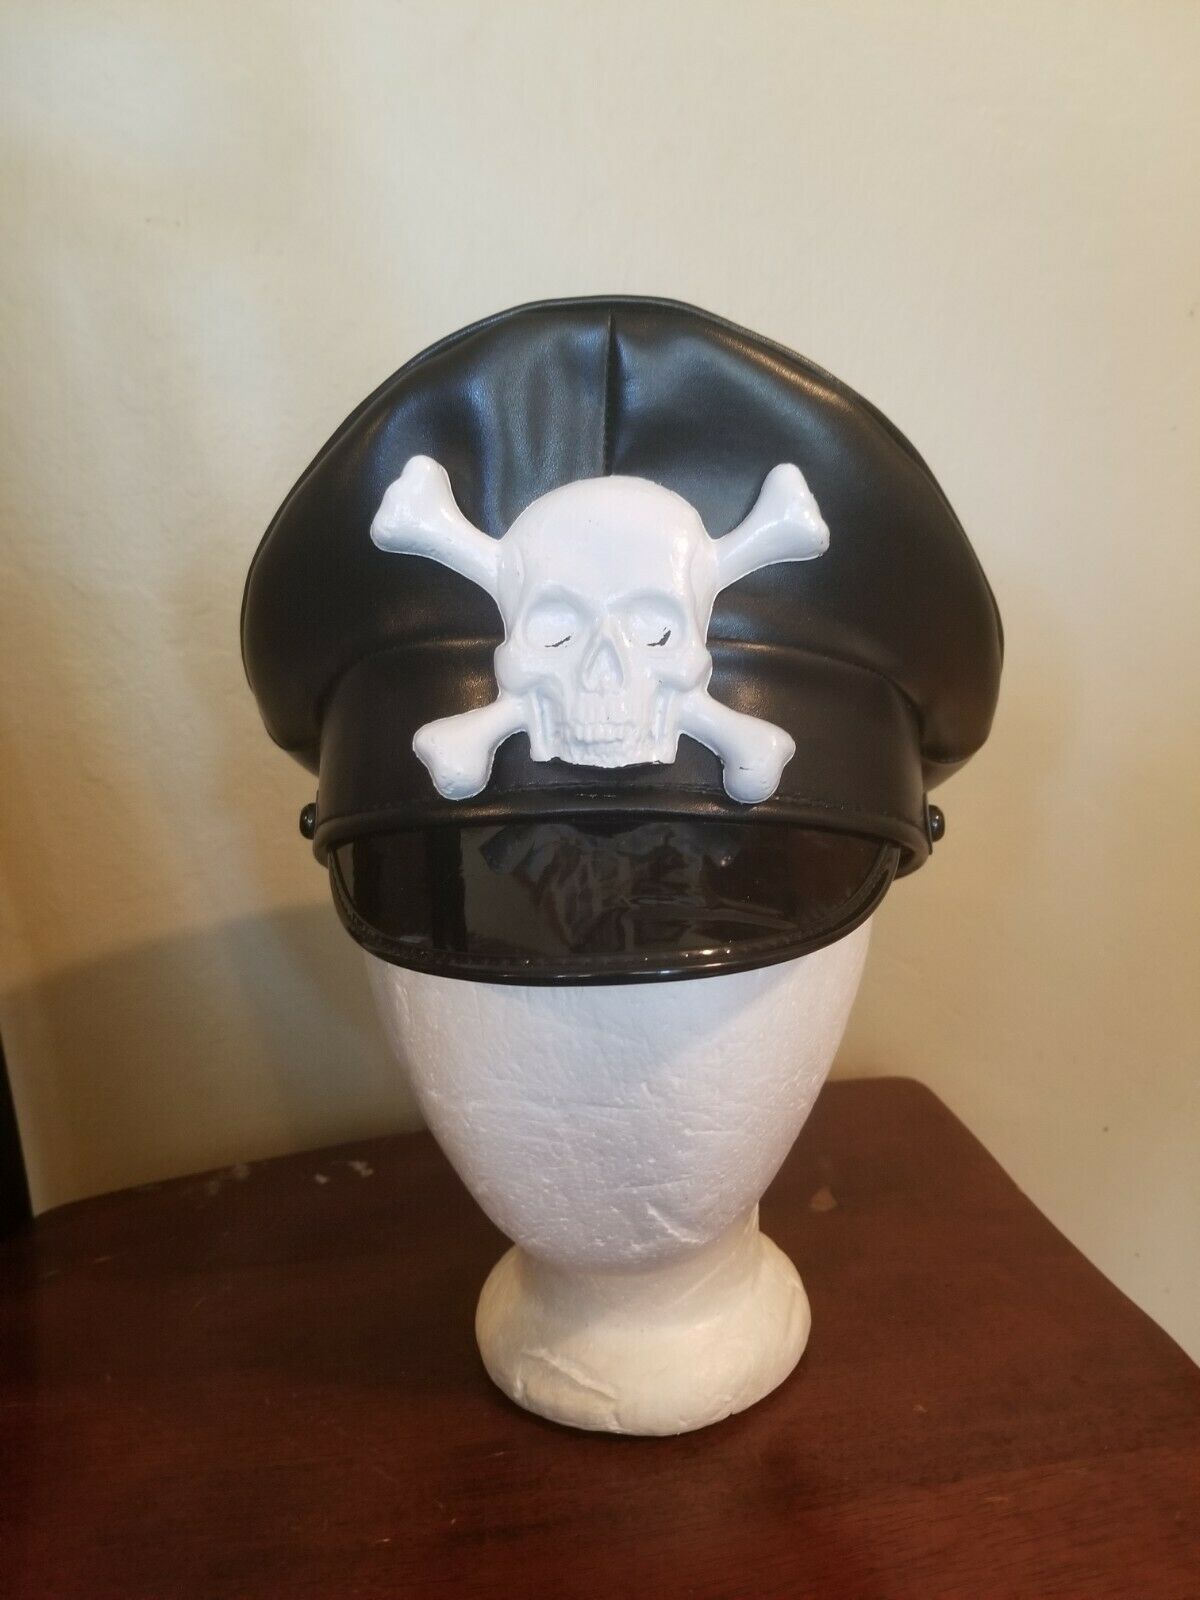 Gorillaz Skulls Cloth Face Mask